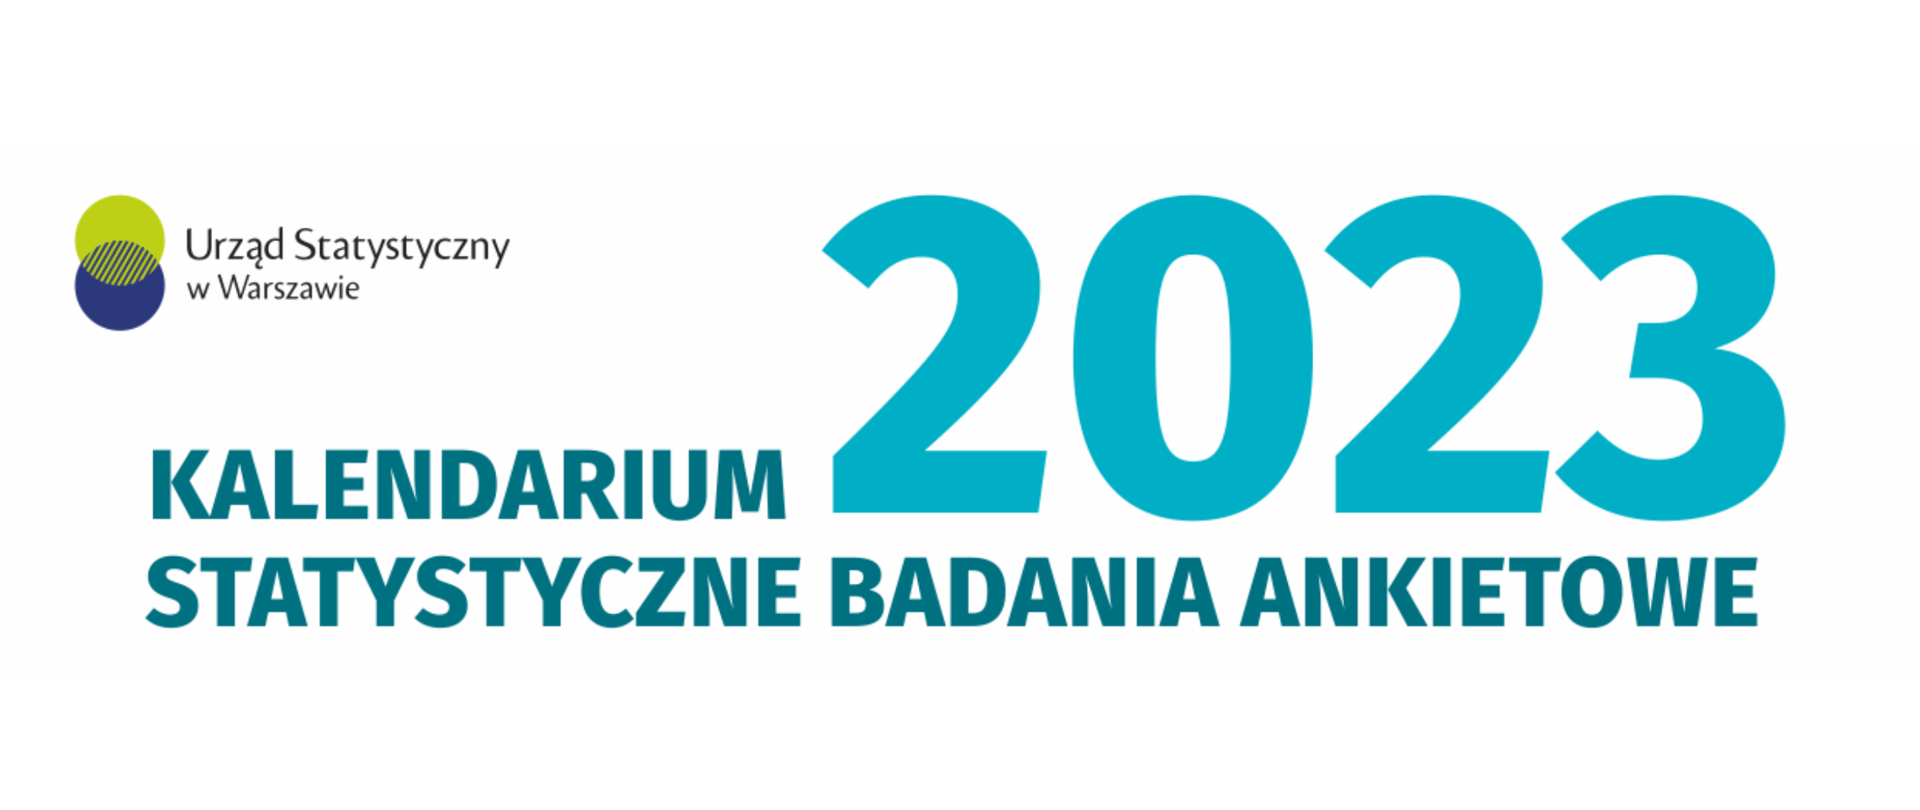 Baner z logo Urzędu Statystycznego w Warszawie oraz treścią: "Kalendarium 2023 statystyczne badania ankietowe".